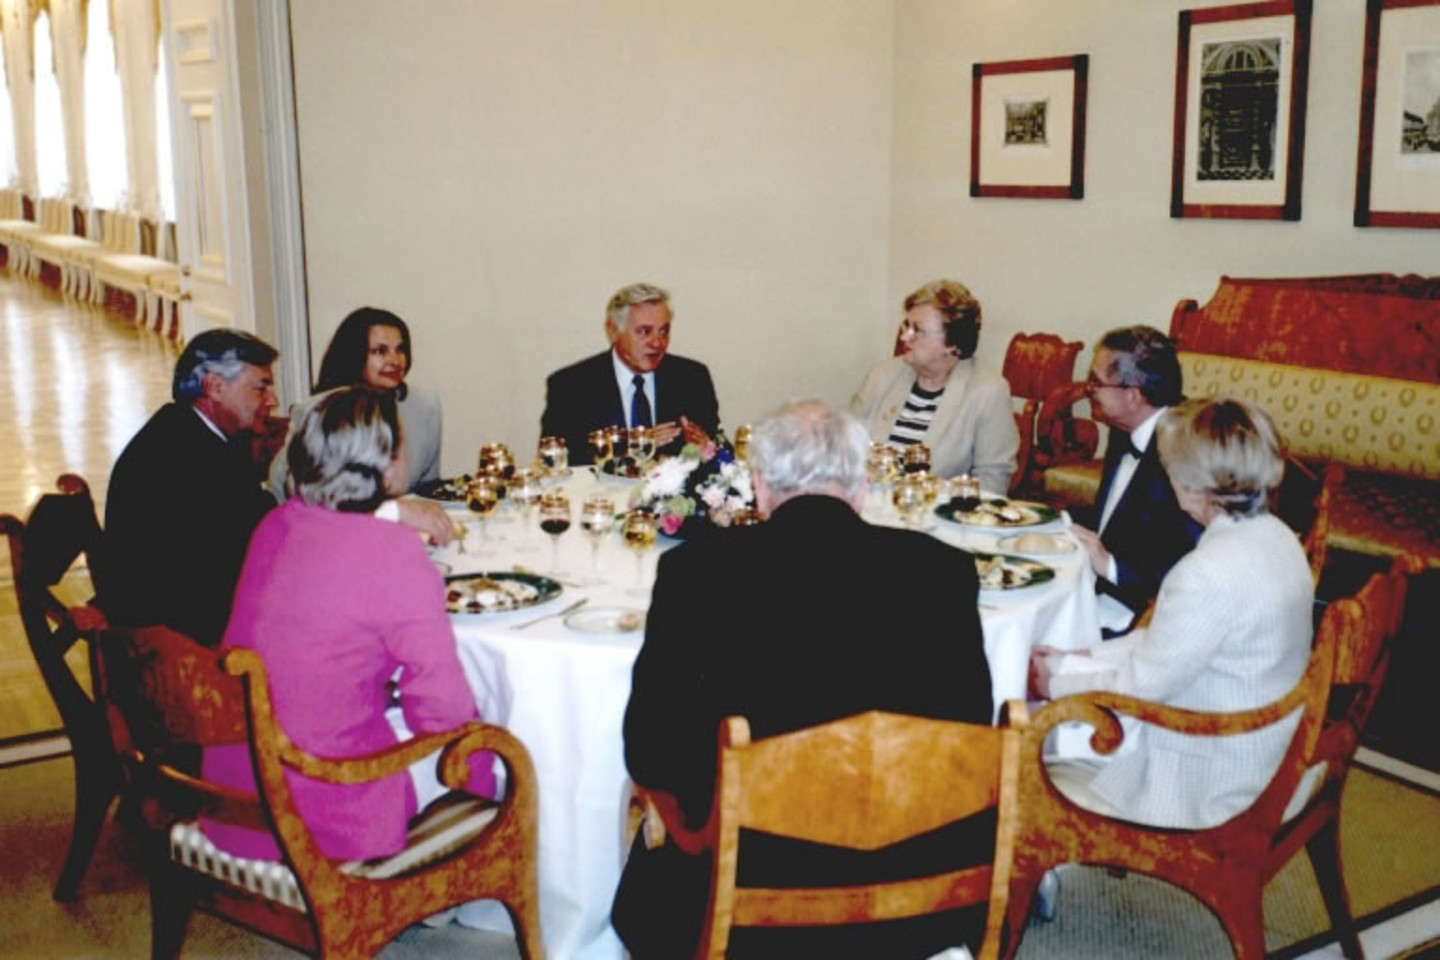 Pietūs Lietuvos Respublikos prezidentūroje  su Prezidentu Valdu Adamkumi, 2000 m. <br>Venclovų namų-muziejaus archyvo nuotr.